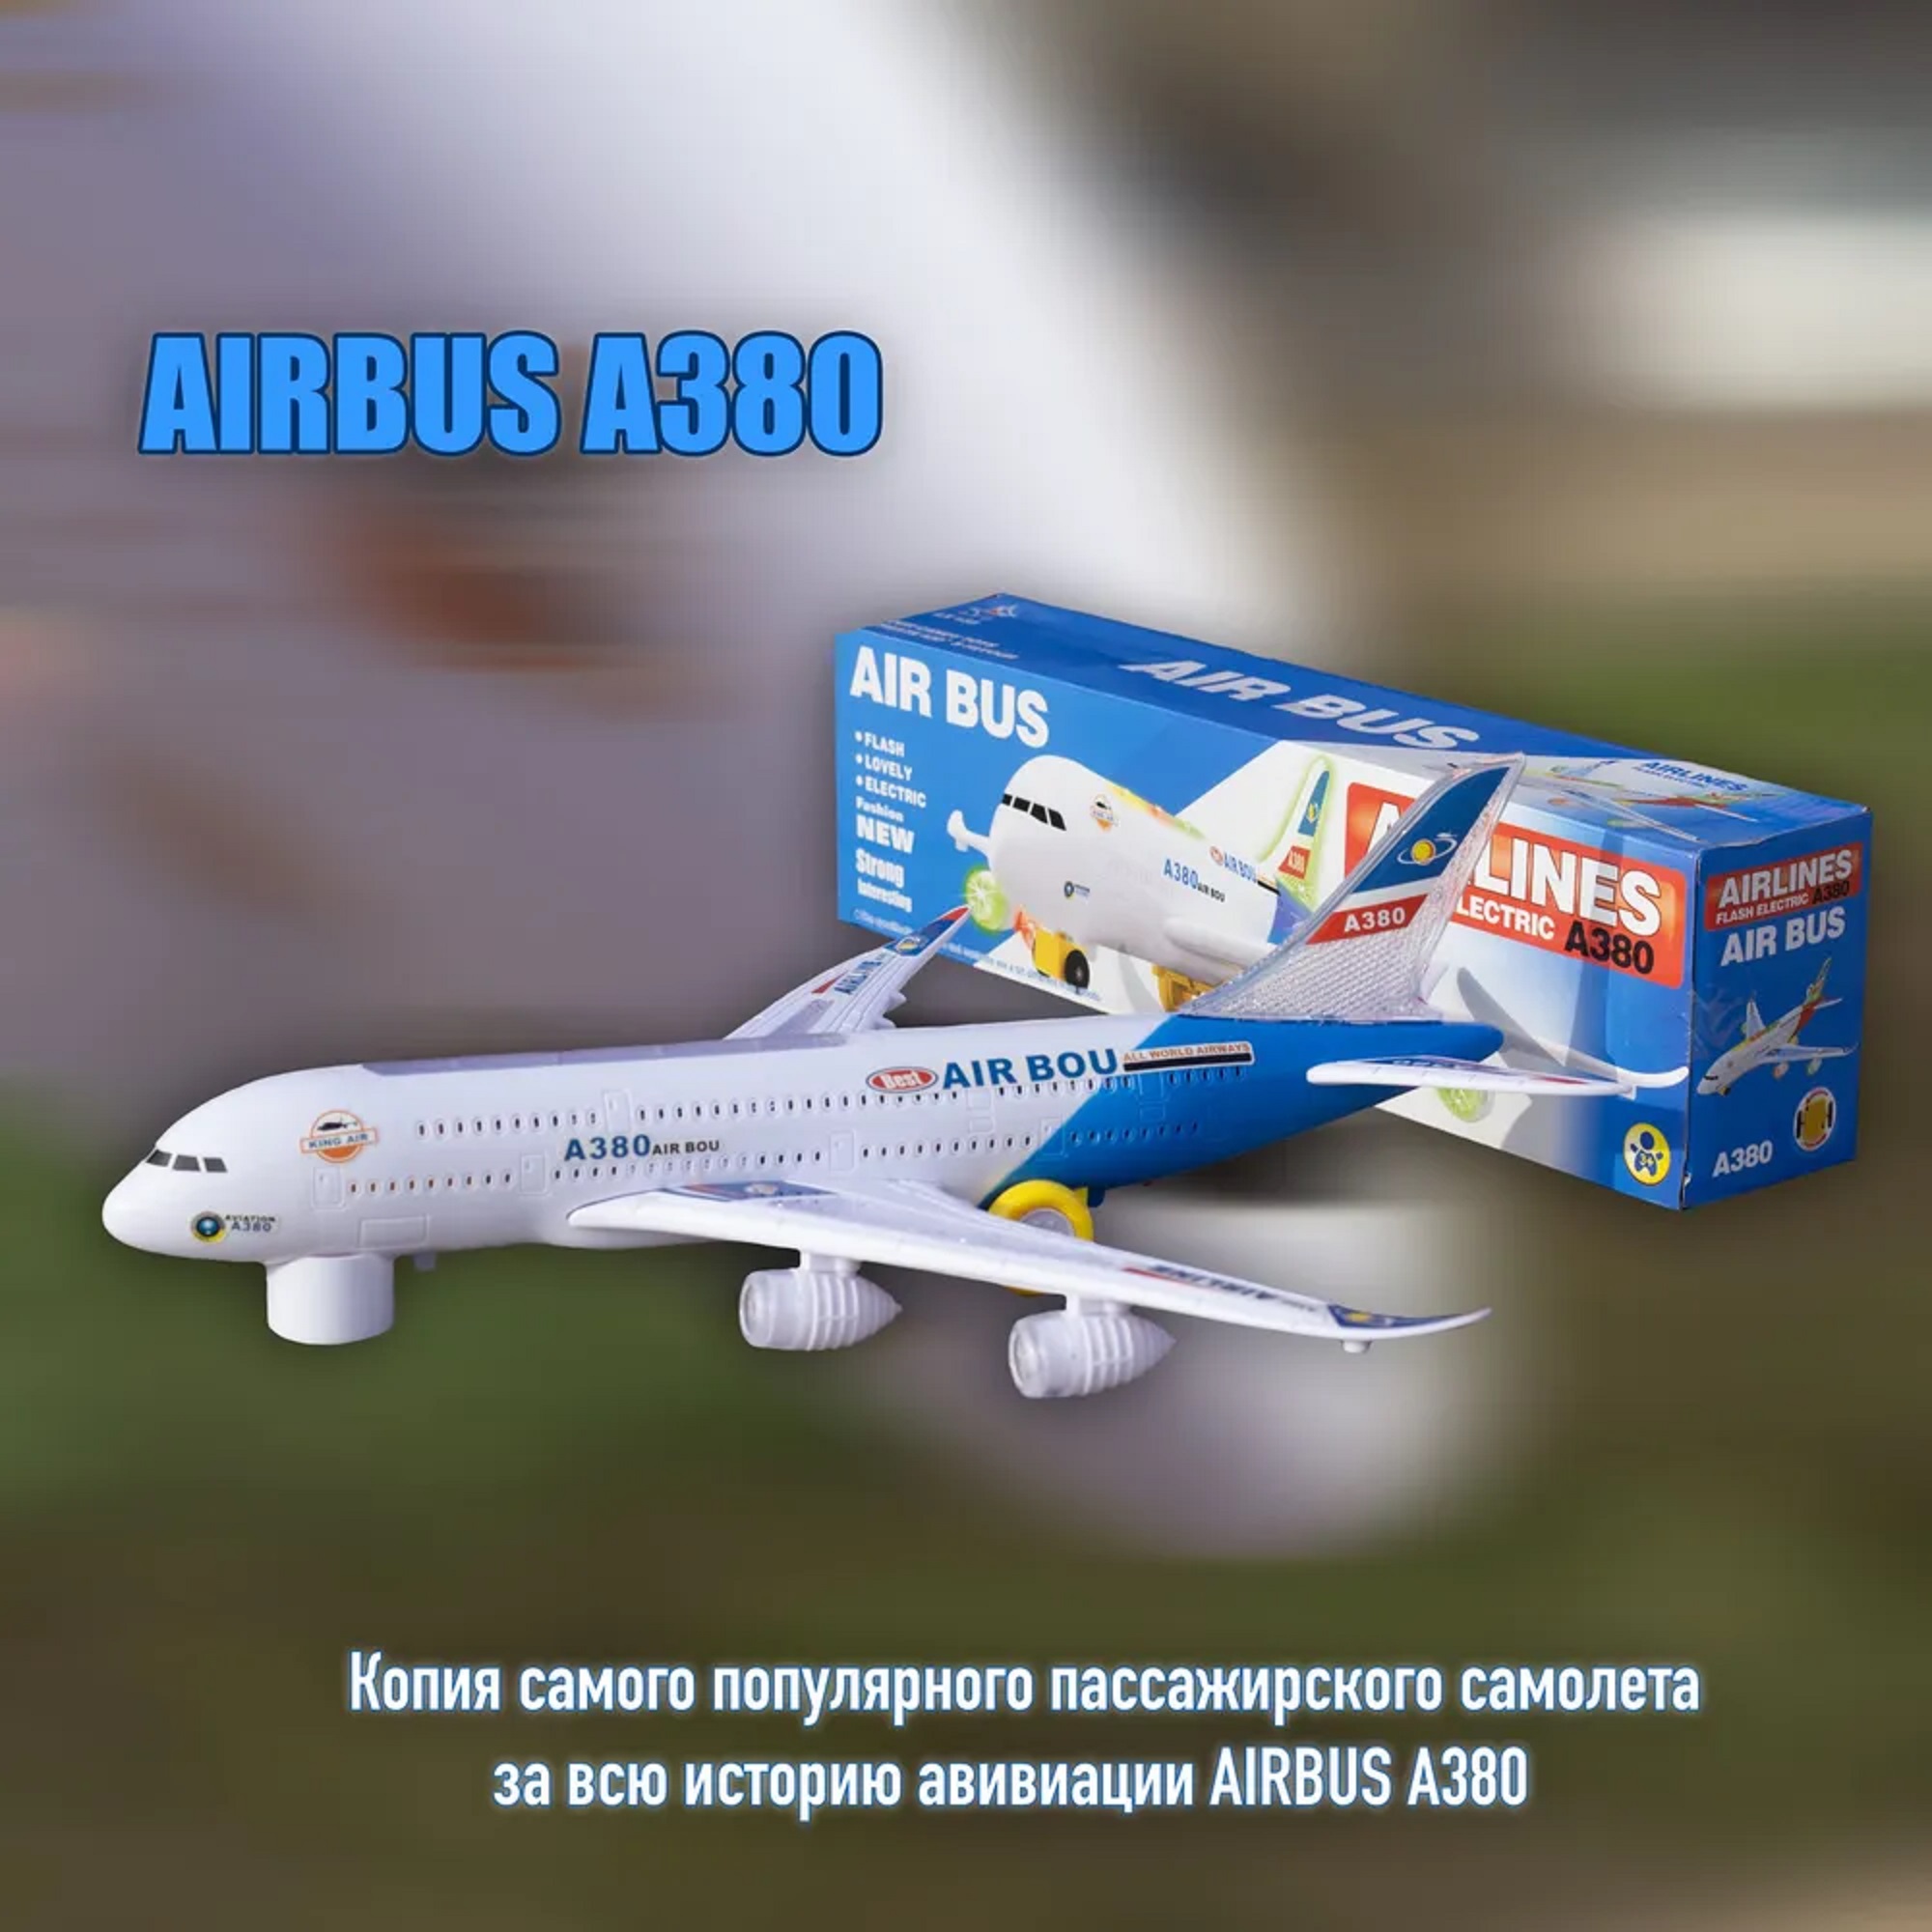 Самолет А380
арт.1539510452